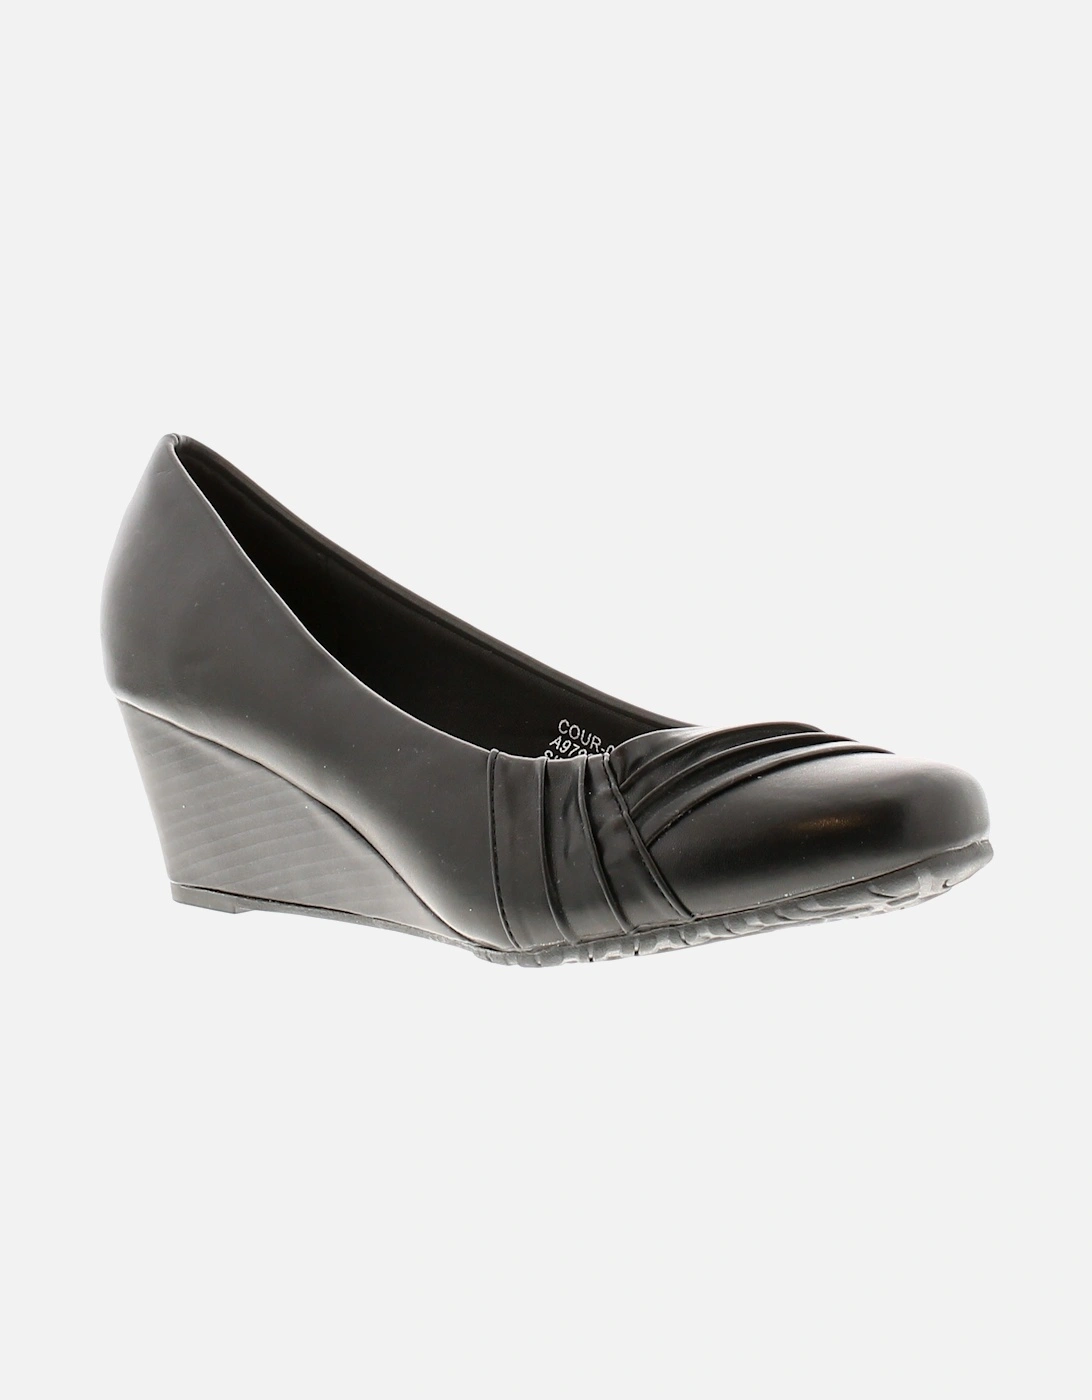 Womens Shoes Wedges Cortez pu Slip On black UK Size, 6 of 5